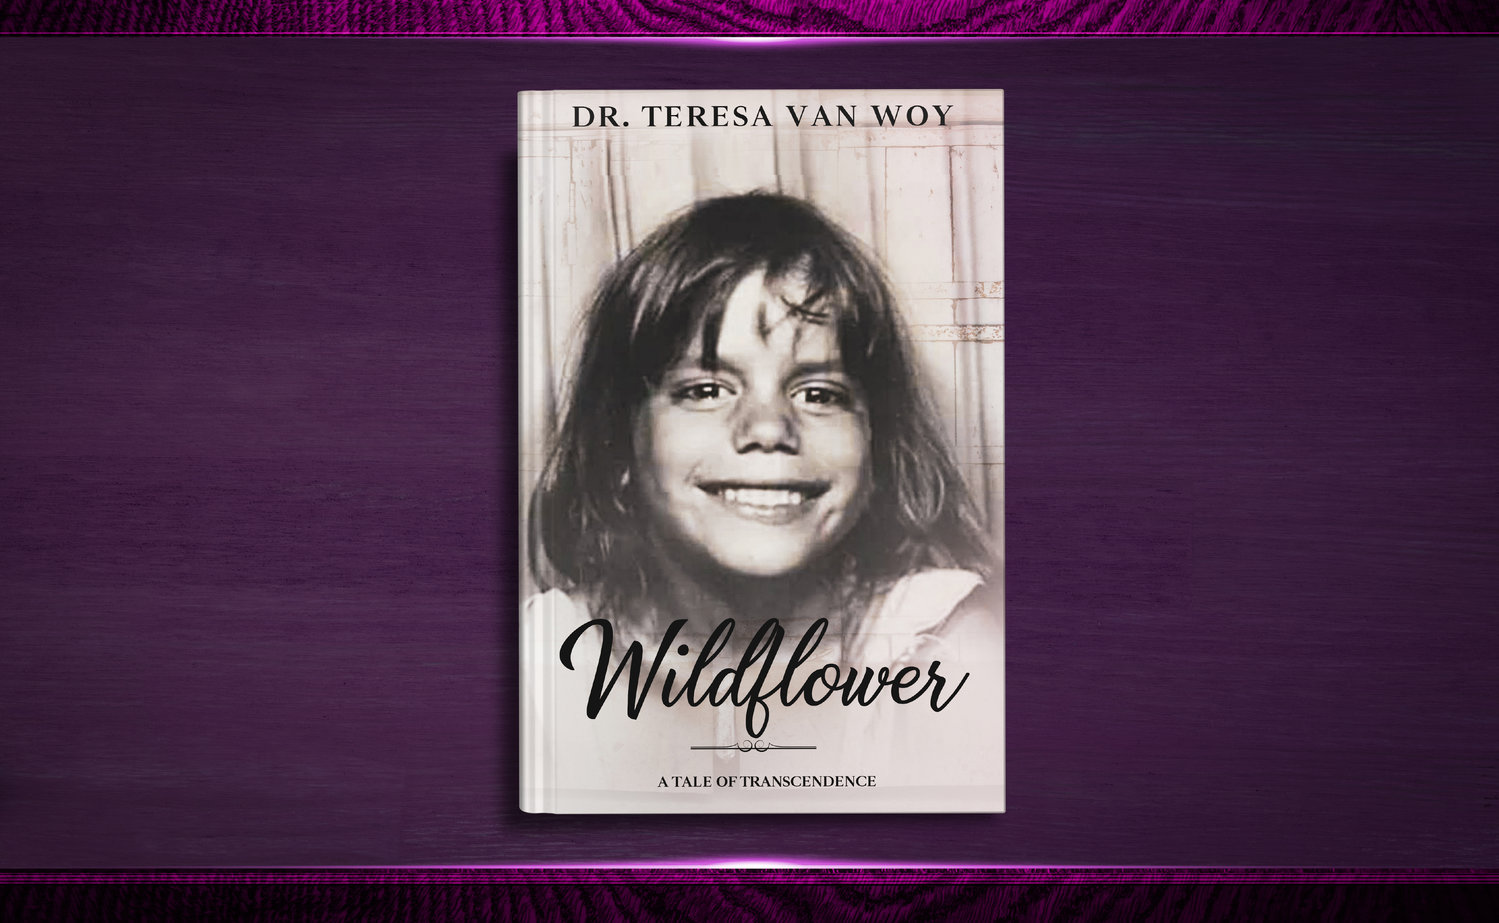 Teresa Van Woy's memoir, "Wildflower: A Tale of Transcendence"